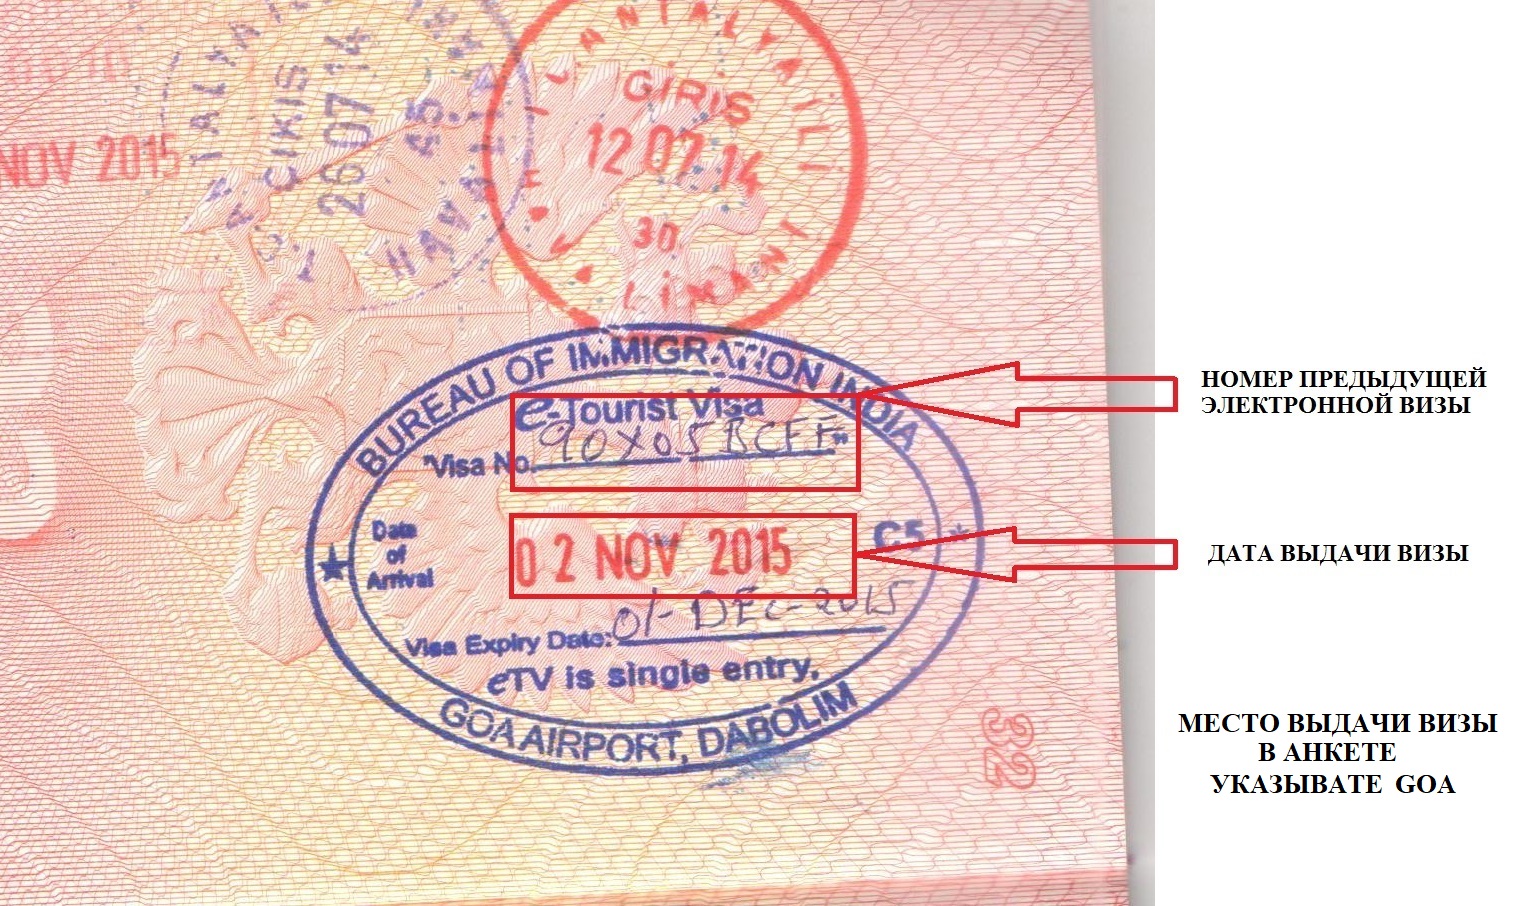 Виза страна выдачи. Номер визы. Номер электронной визы. Номер индийской визы. Штамп виза.